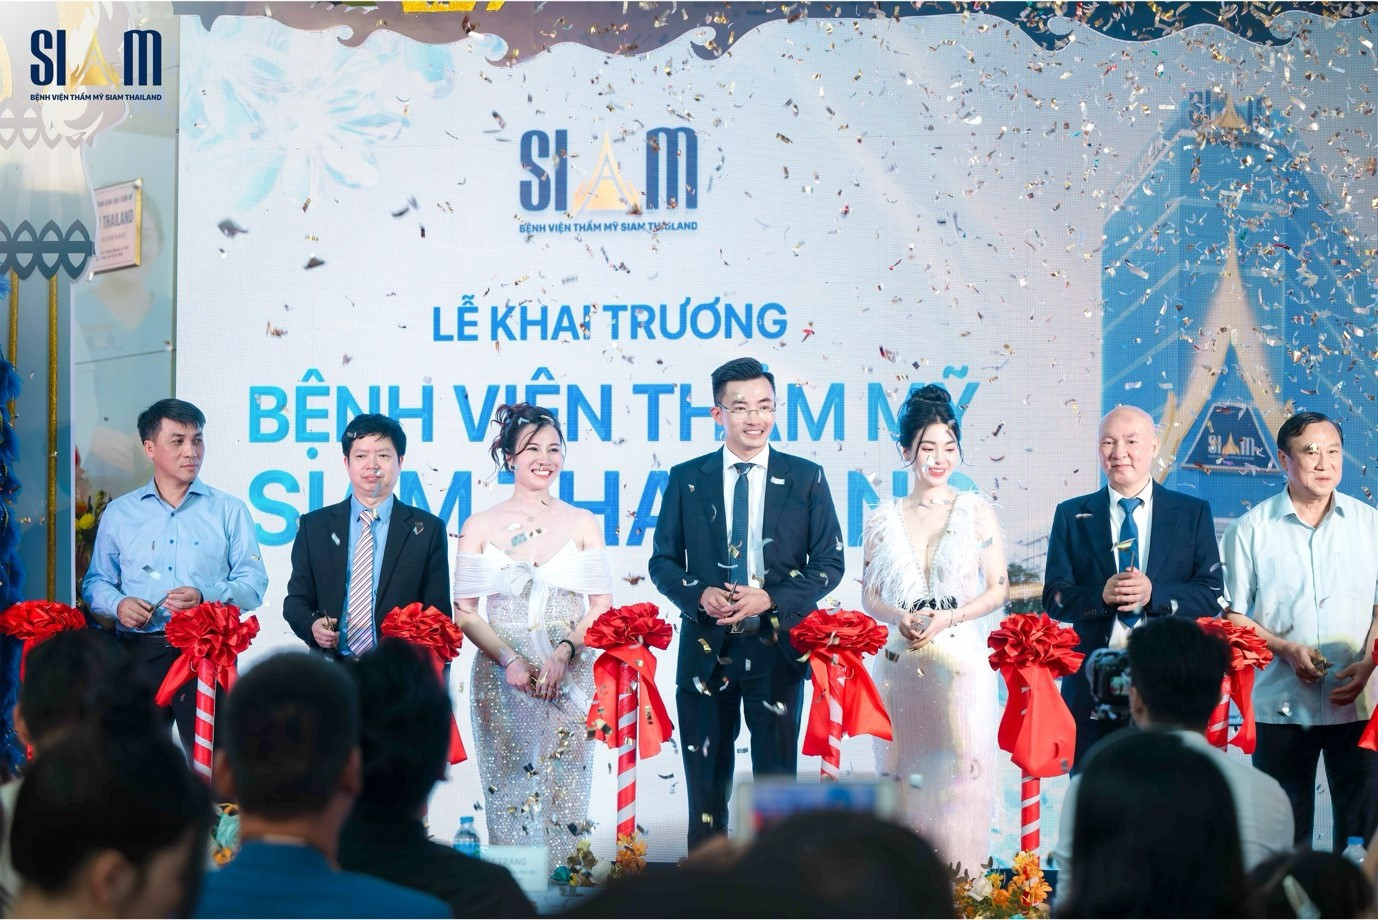 SIAM Thailand đặt mục tiêu trở thành bệnh viện thẩm mỹ đẳng cấp hàng đầu